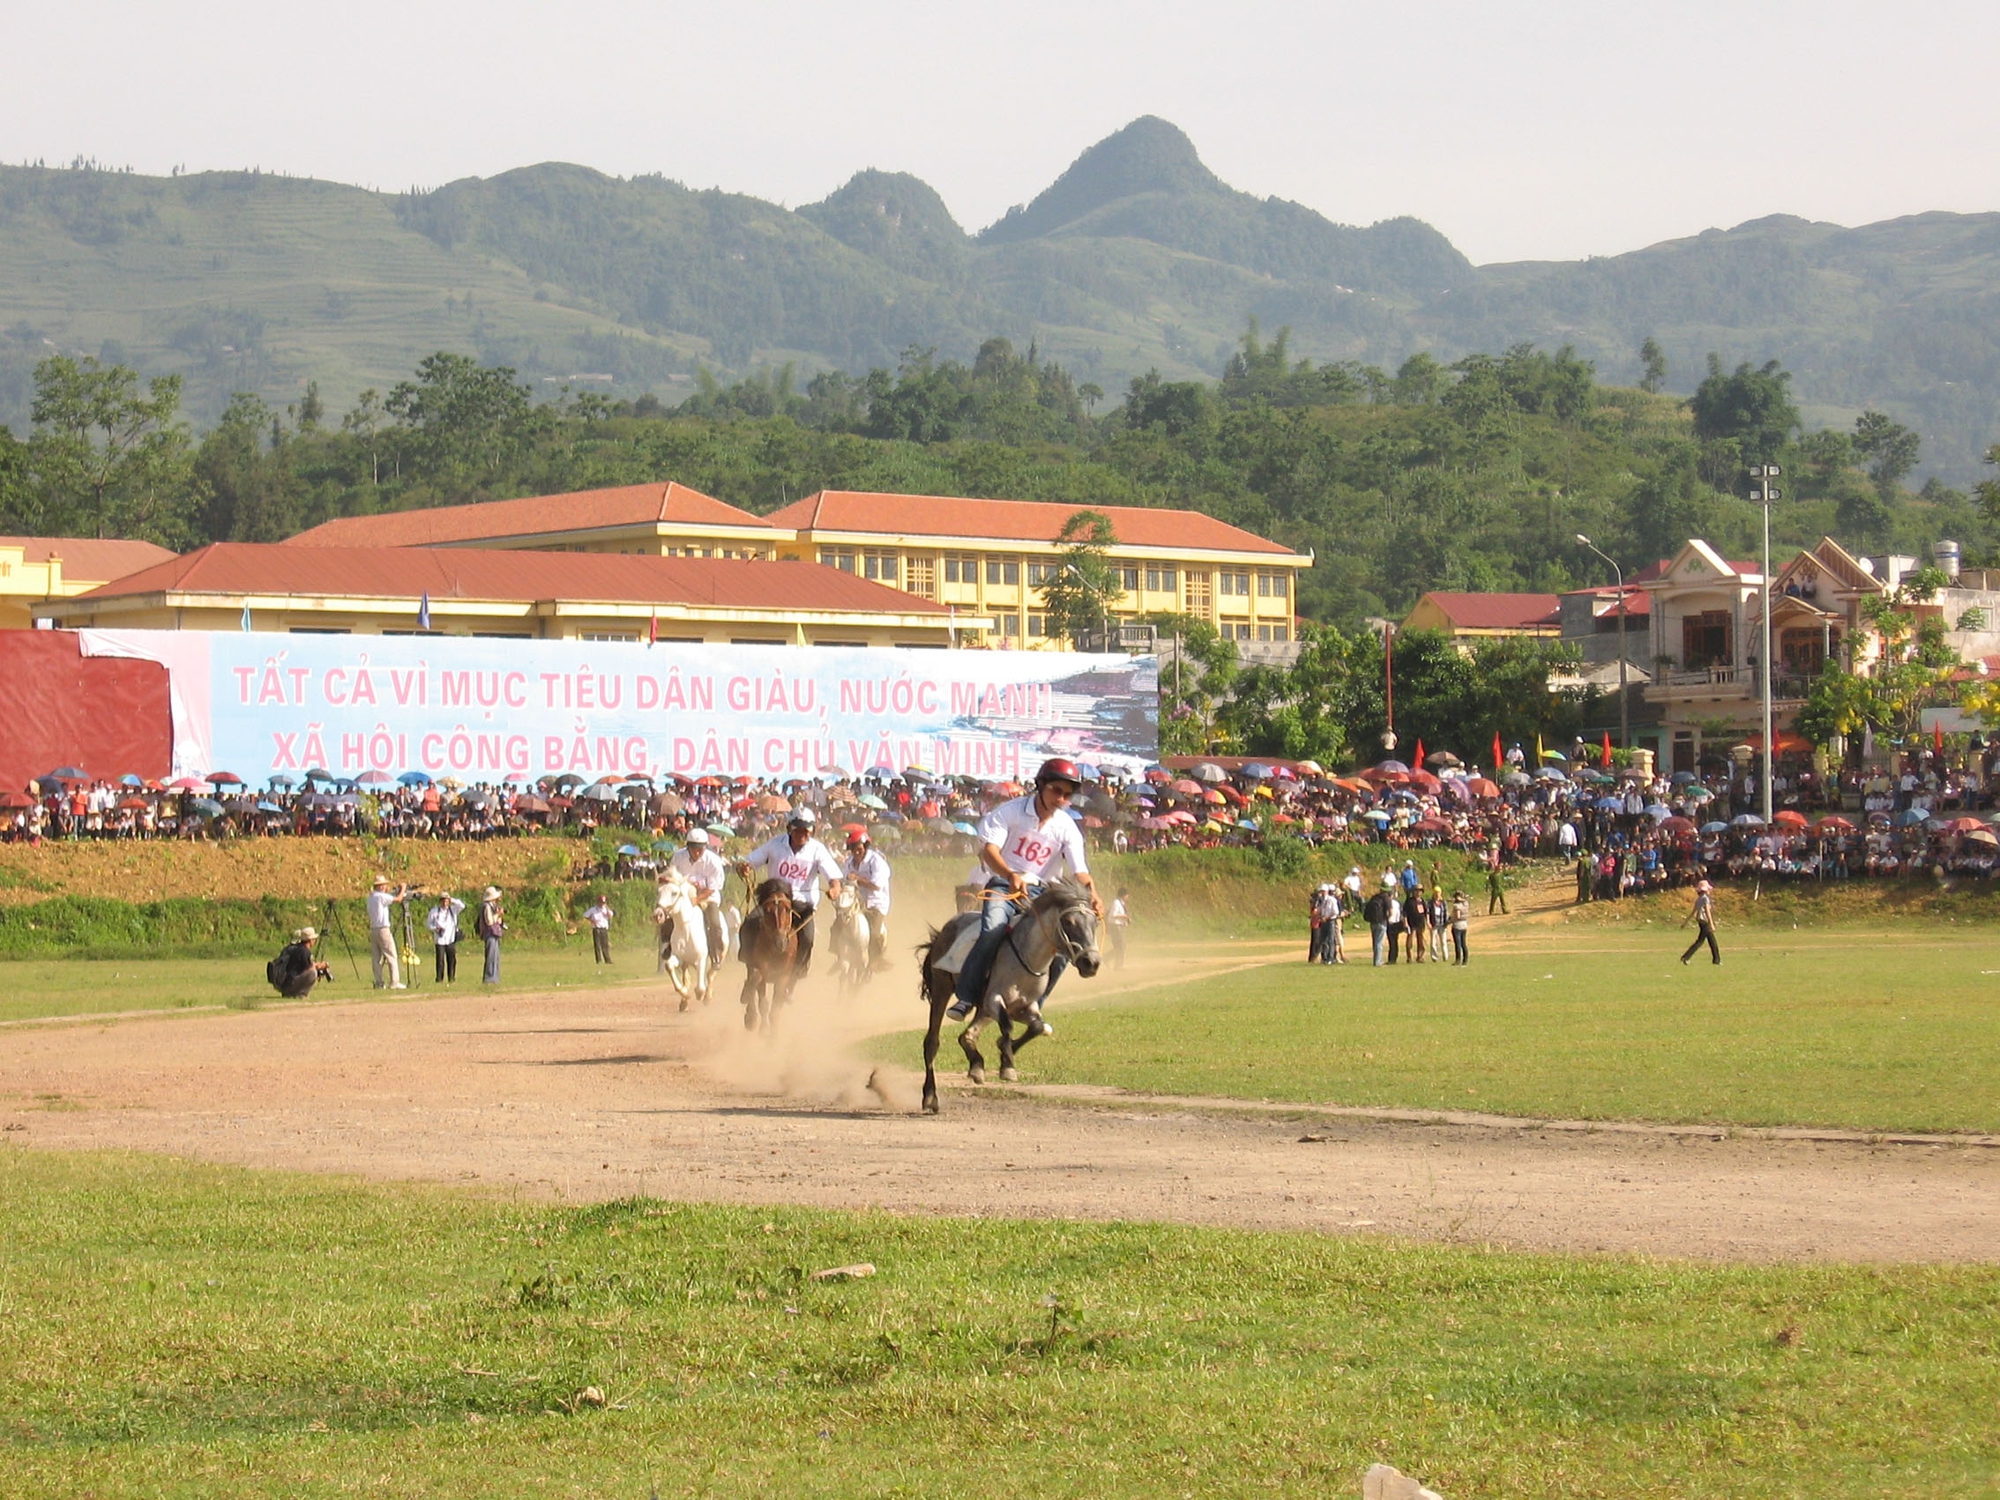 Lào Cai: Cơ hội ngắm các nài ngựa người Mông tranh tài tại Giải đua ngựa truyền thống Bắc Hà - Ảnh 1.